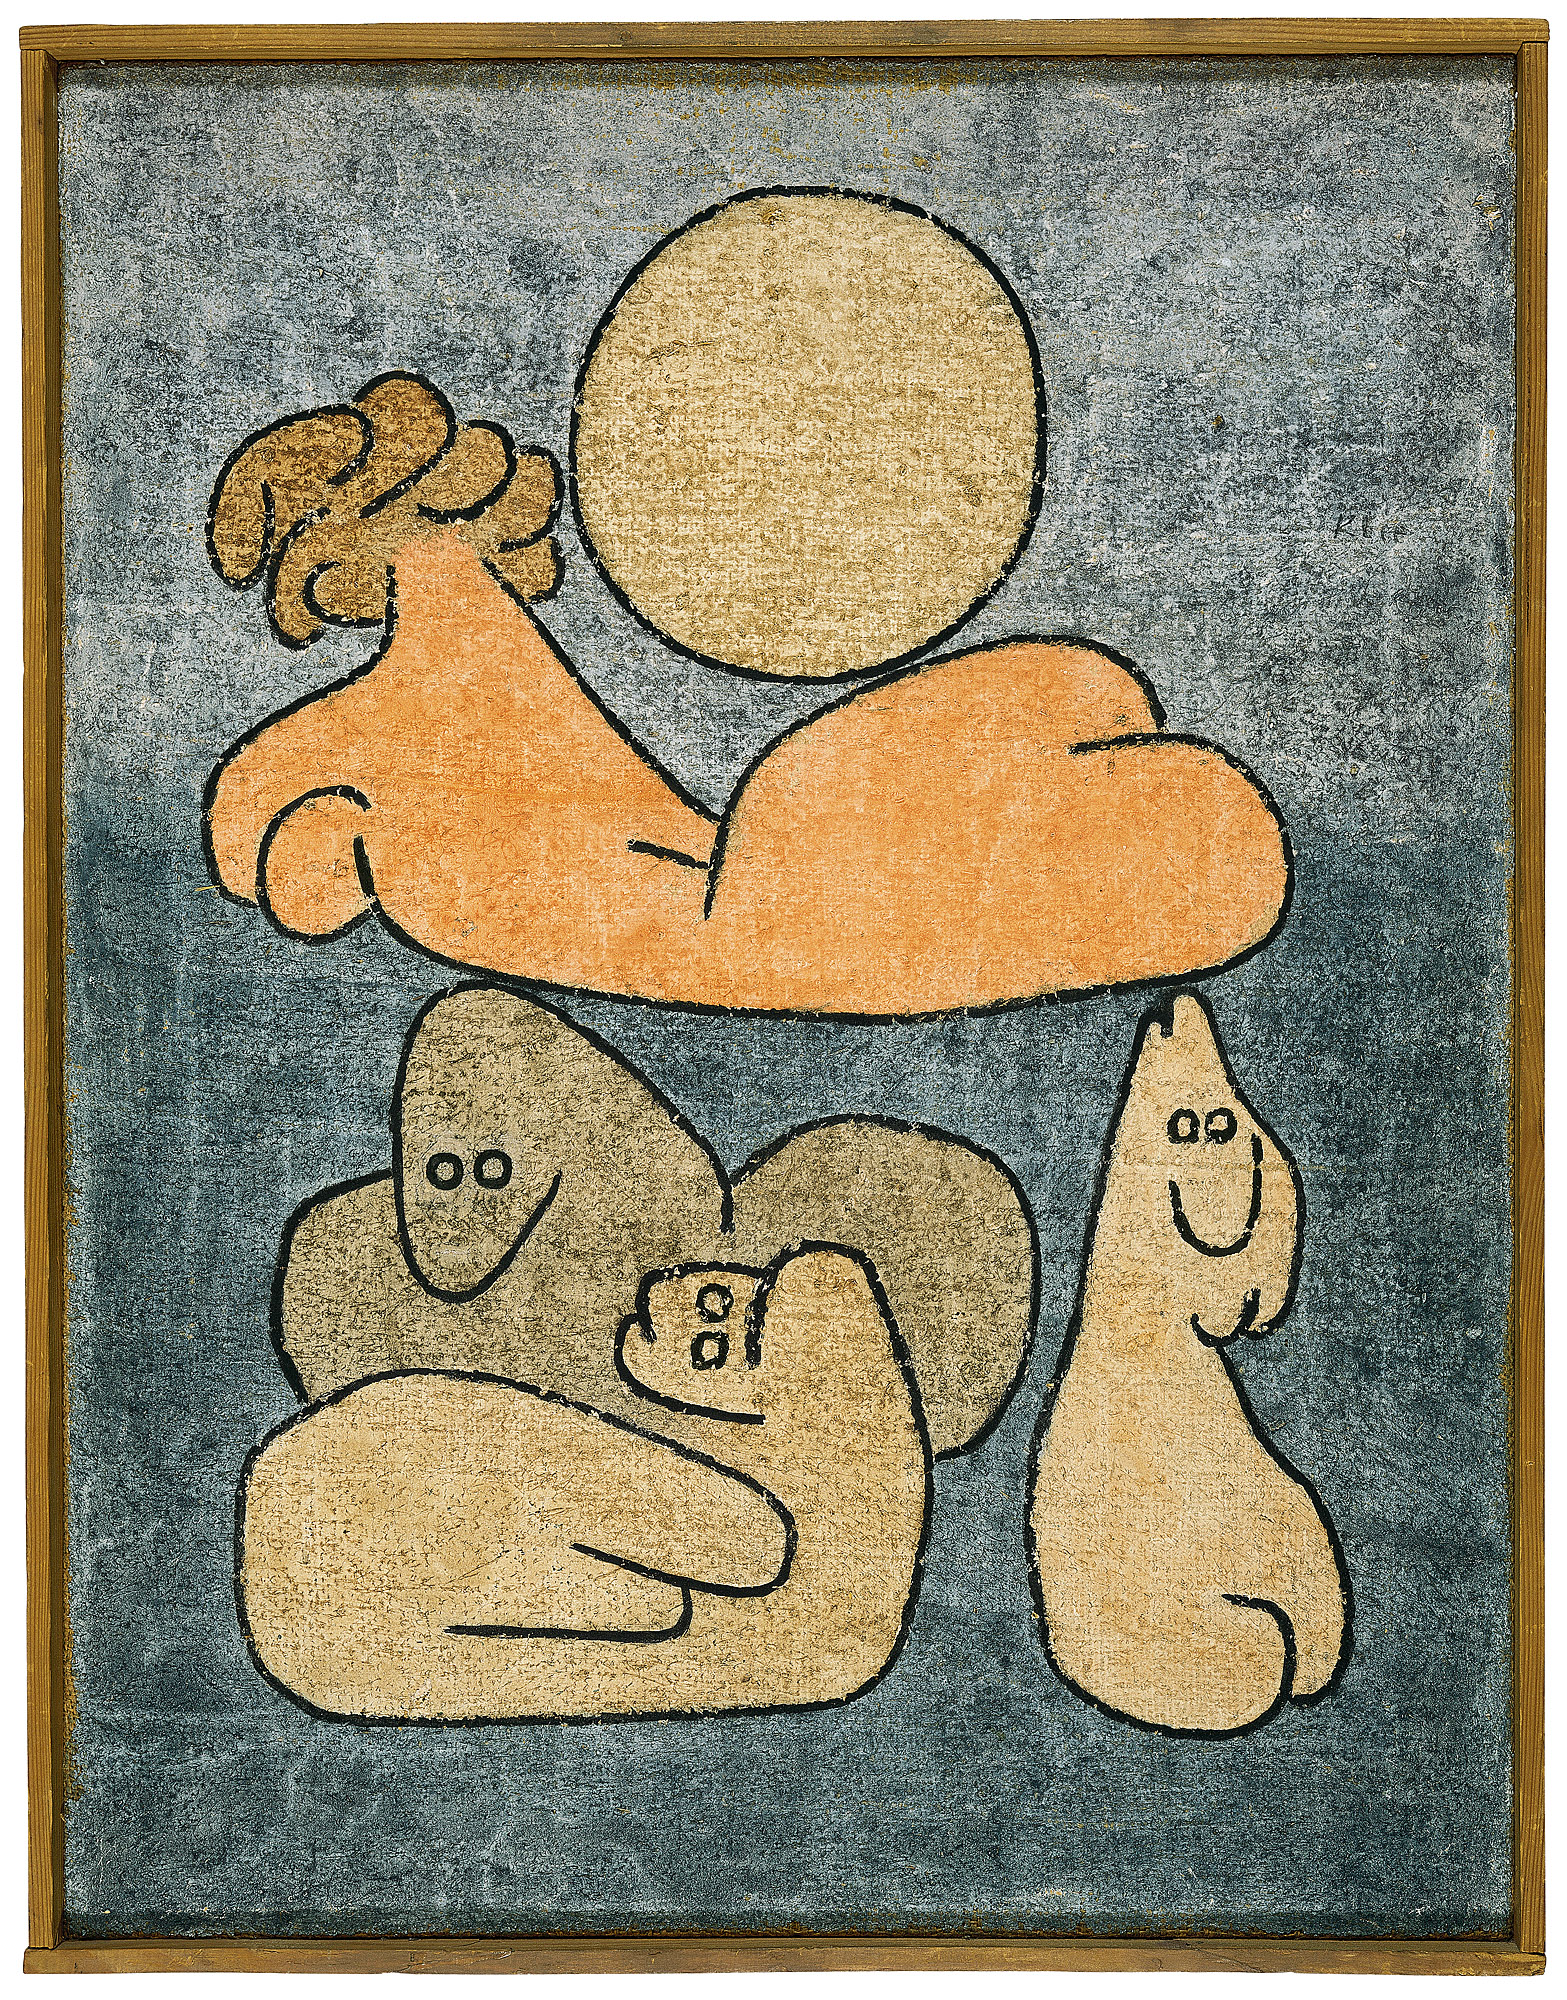 軀幹與其親屬 (在滿月下) by Paul Klee - 1939 - 65 x 50 cm 